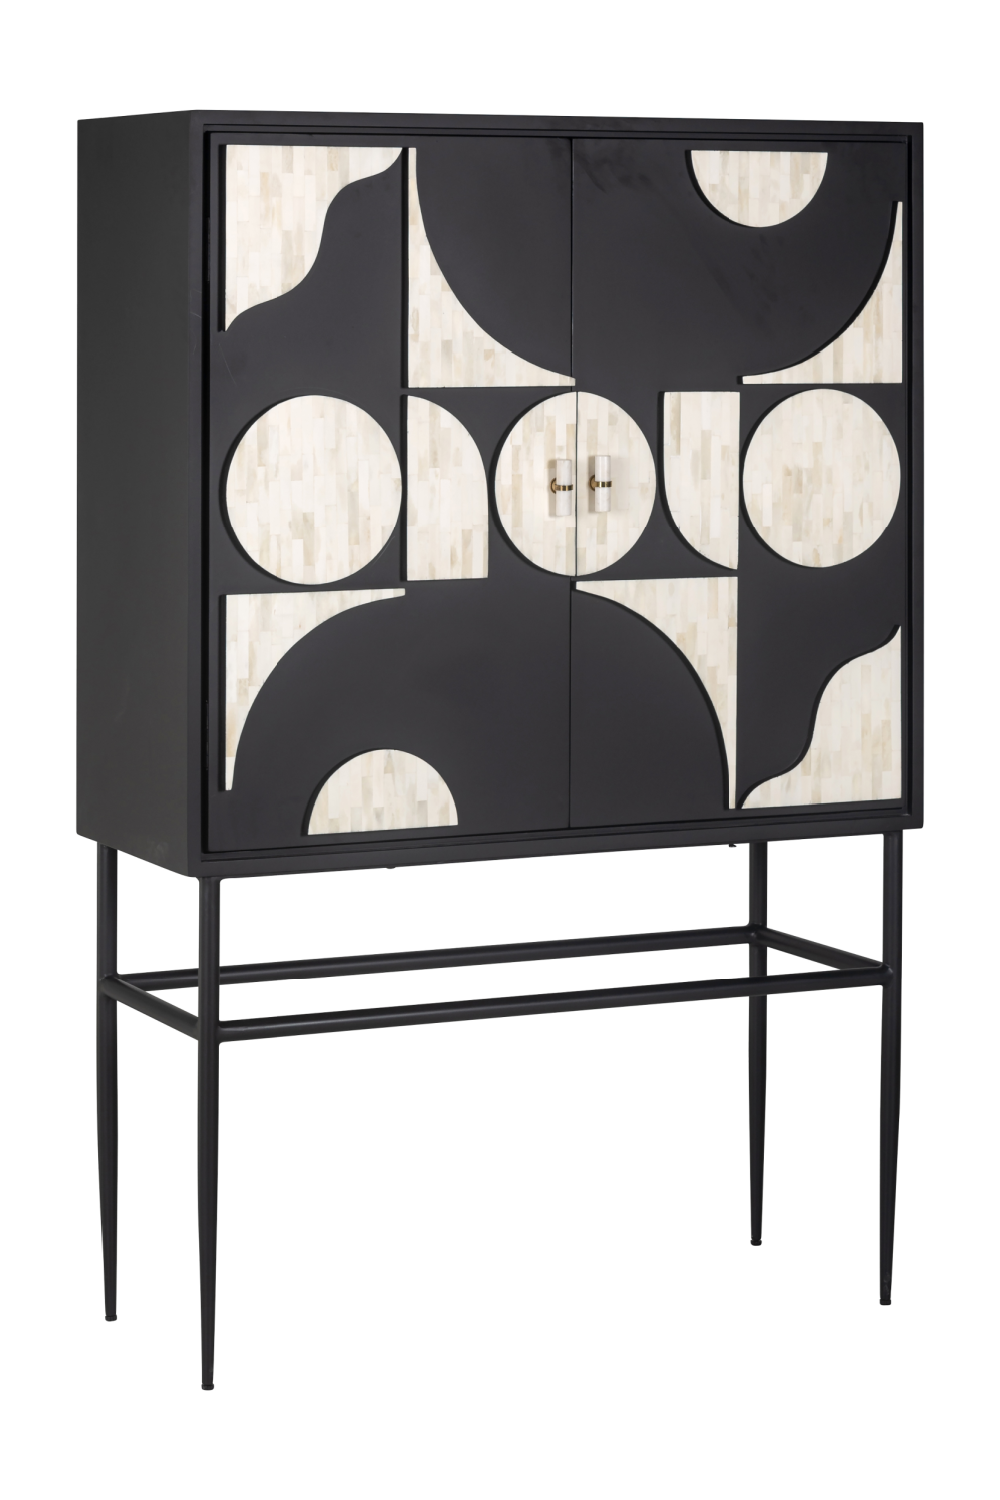 Wooden Contemporary Cabinet | OROA Mendoza | Oroa.com